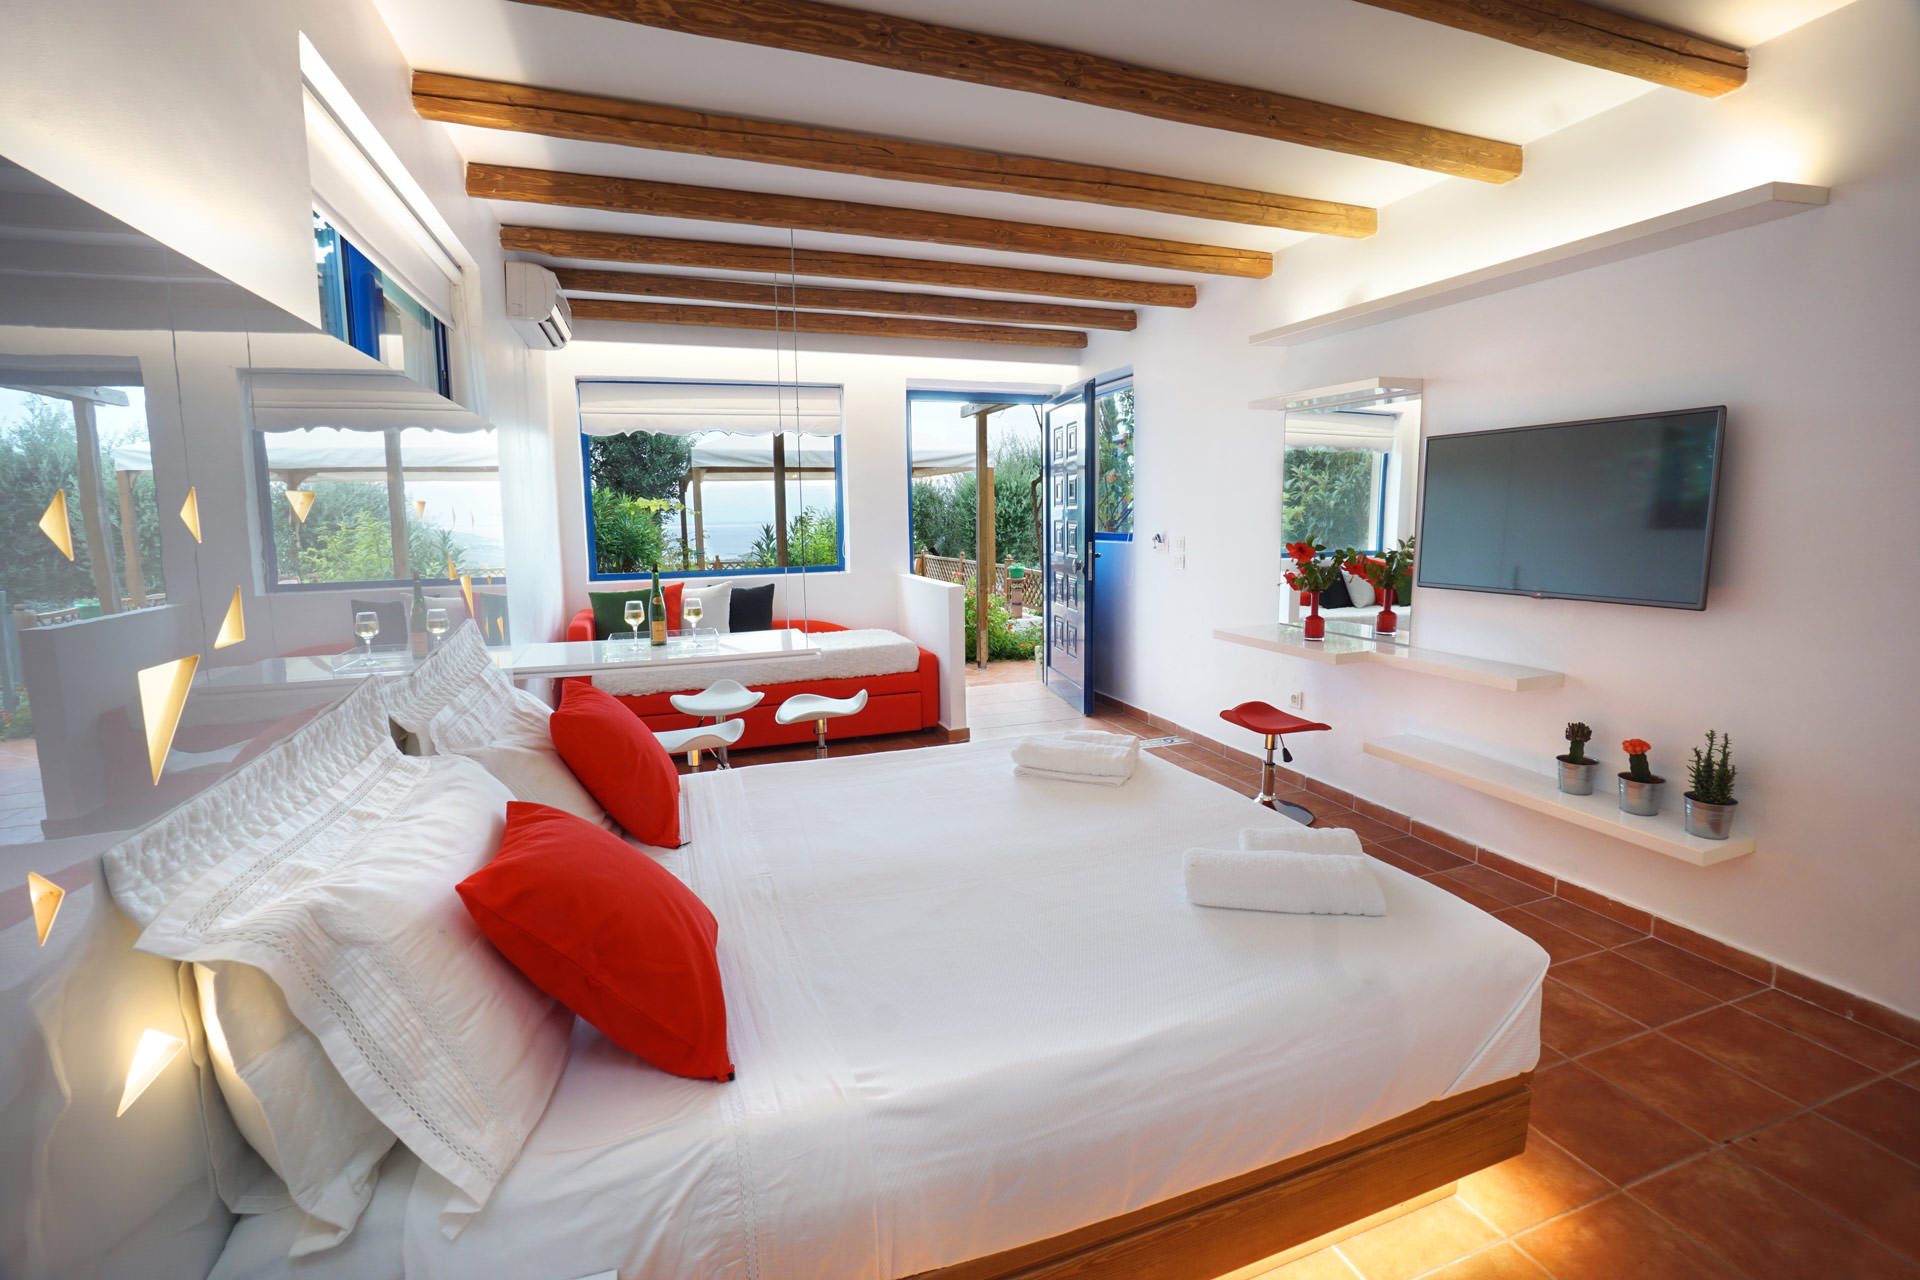 Felix Hotel Ανακαίνιση Ξενοδοχείου στη Κεφαλονιά | Hotels & leisure housing complexes